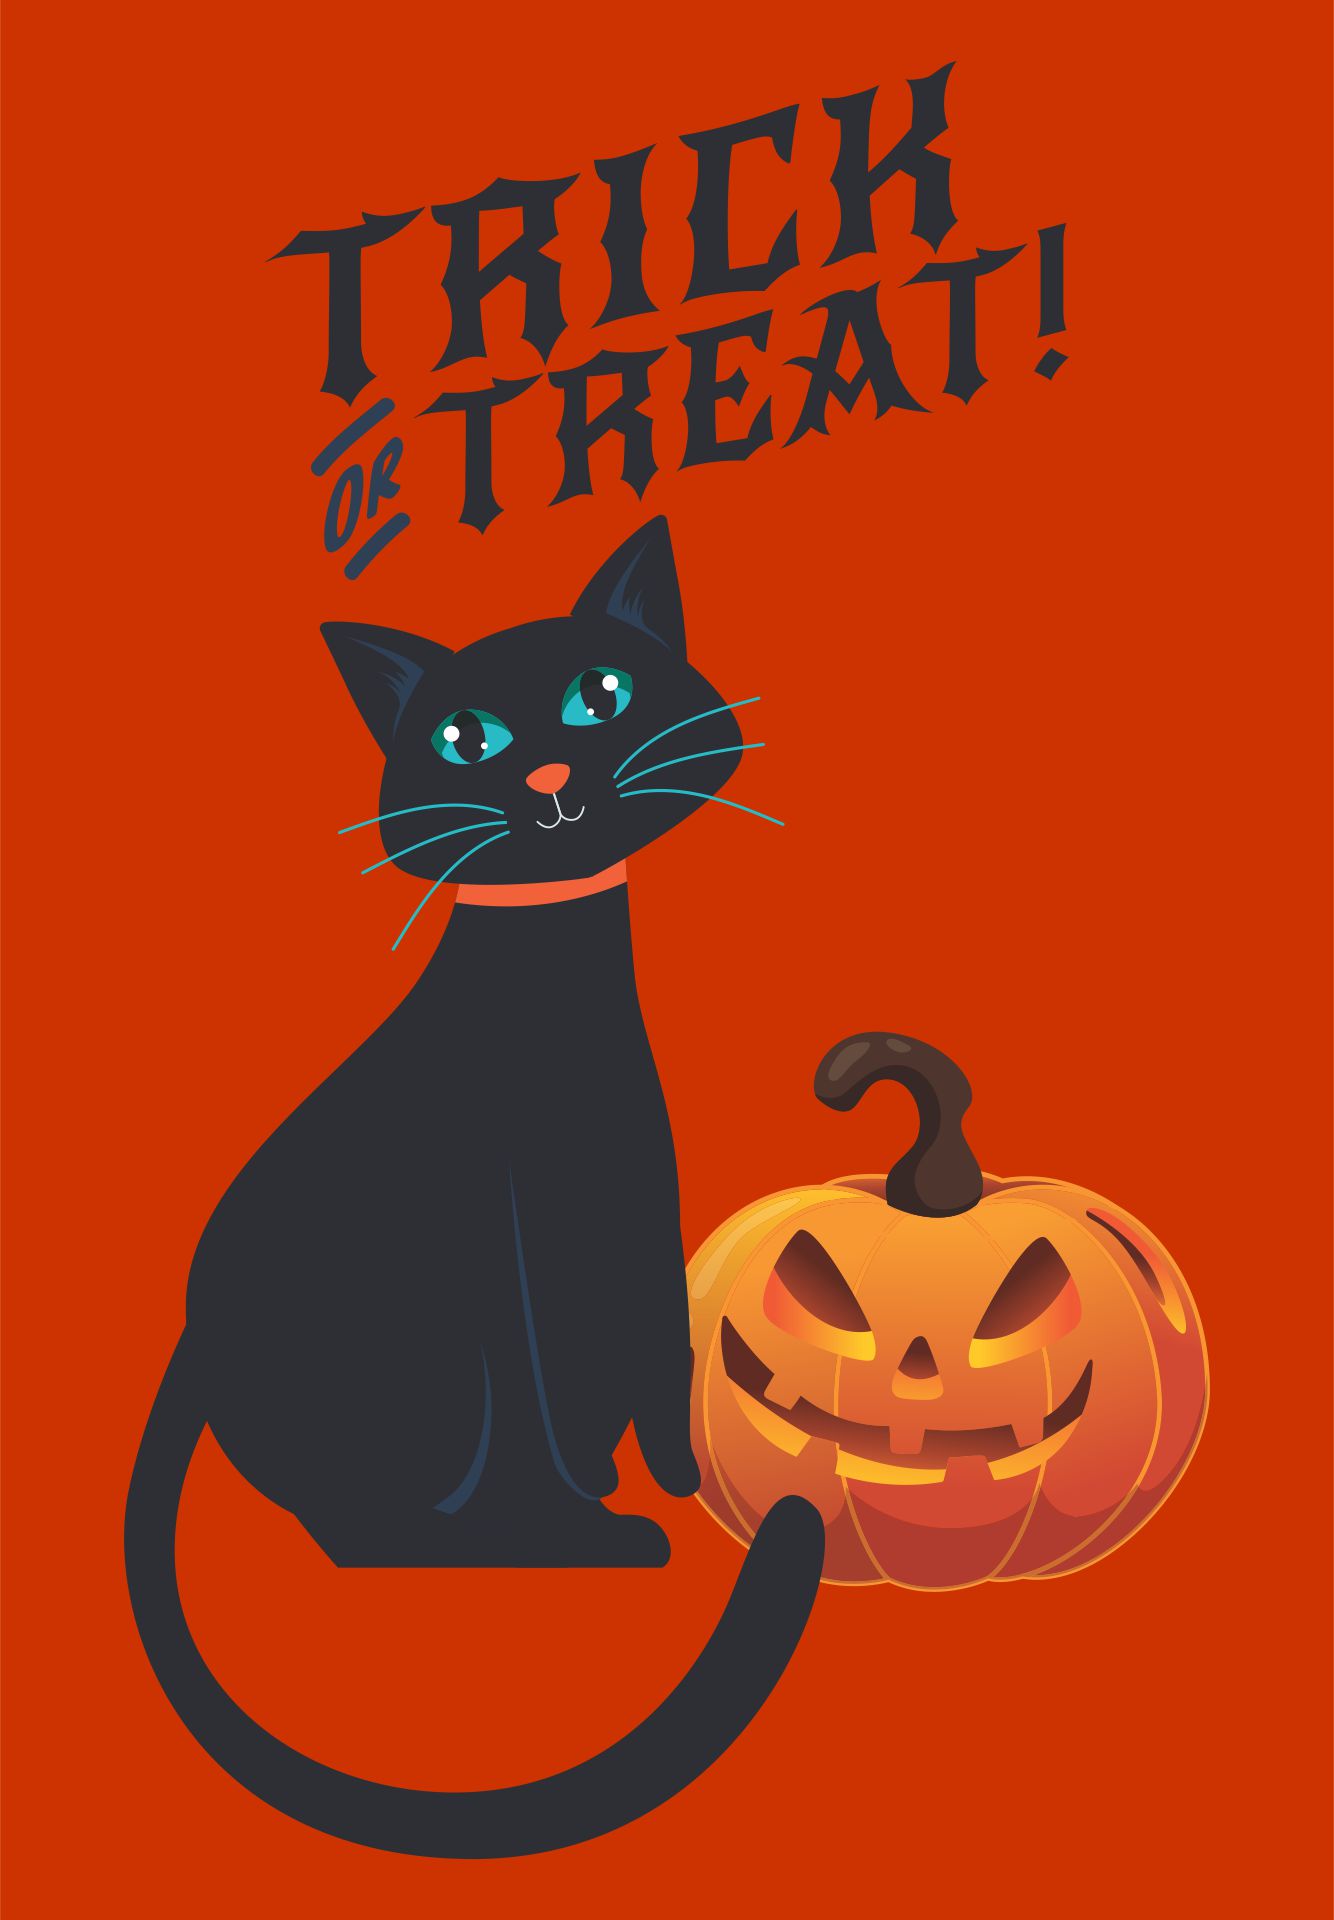 Printable Halloween Vintage Holiday Graphics